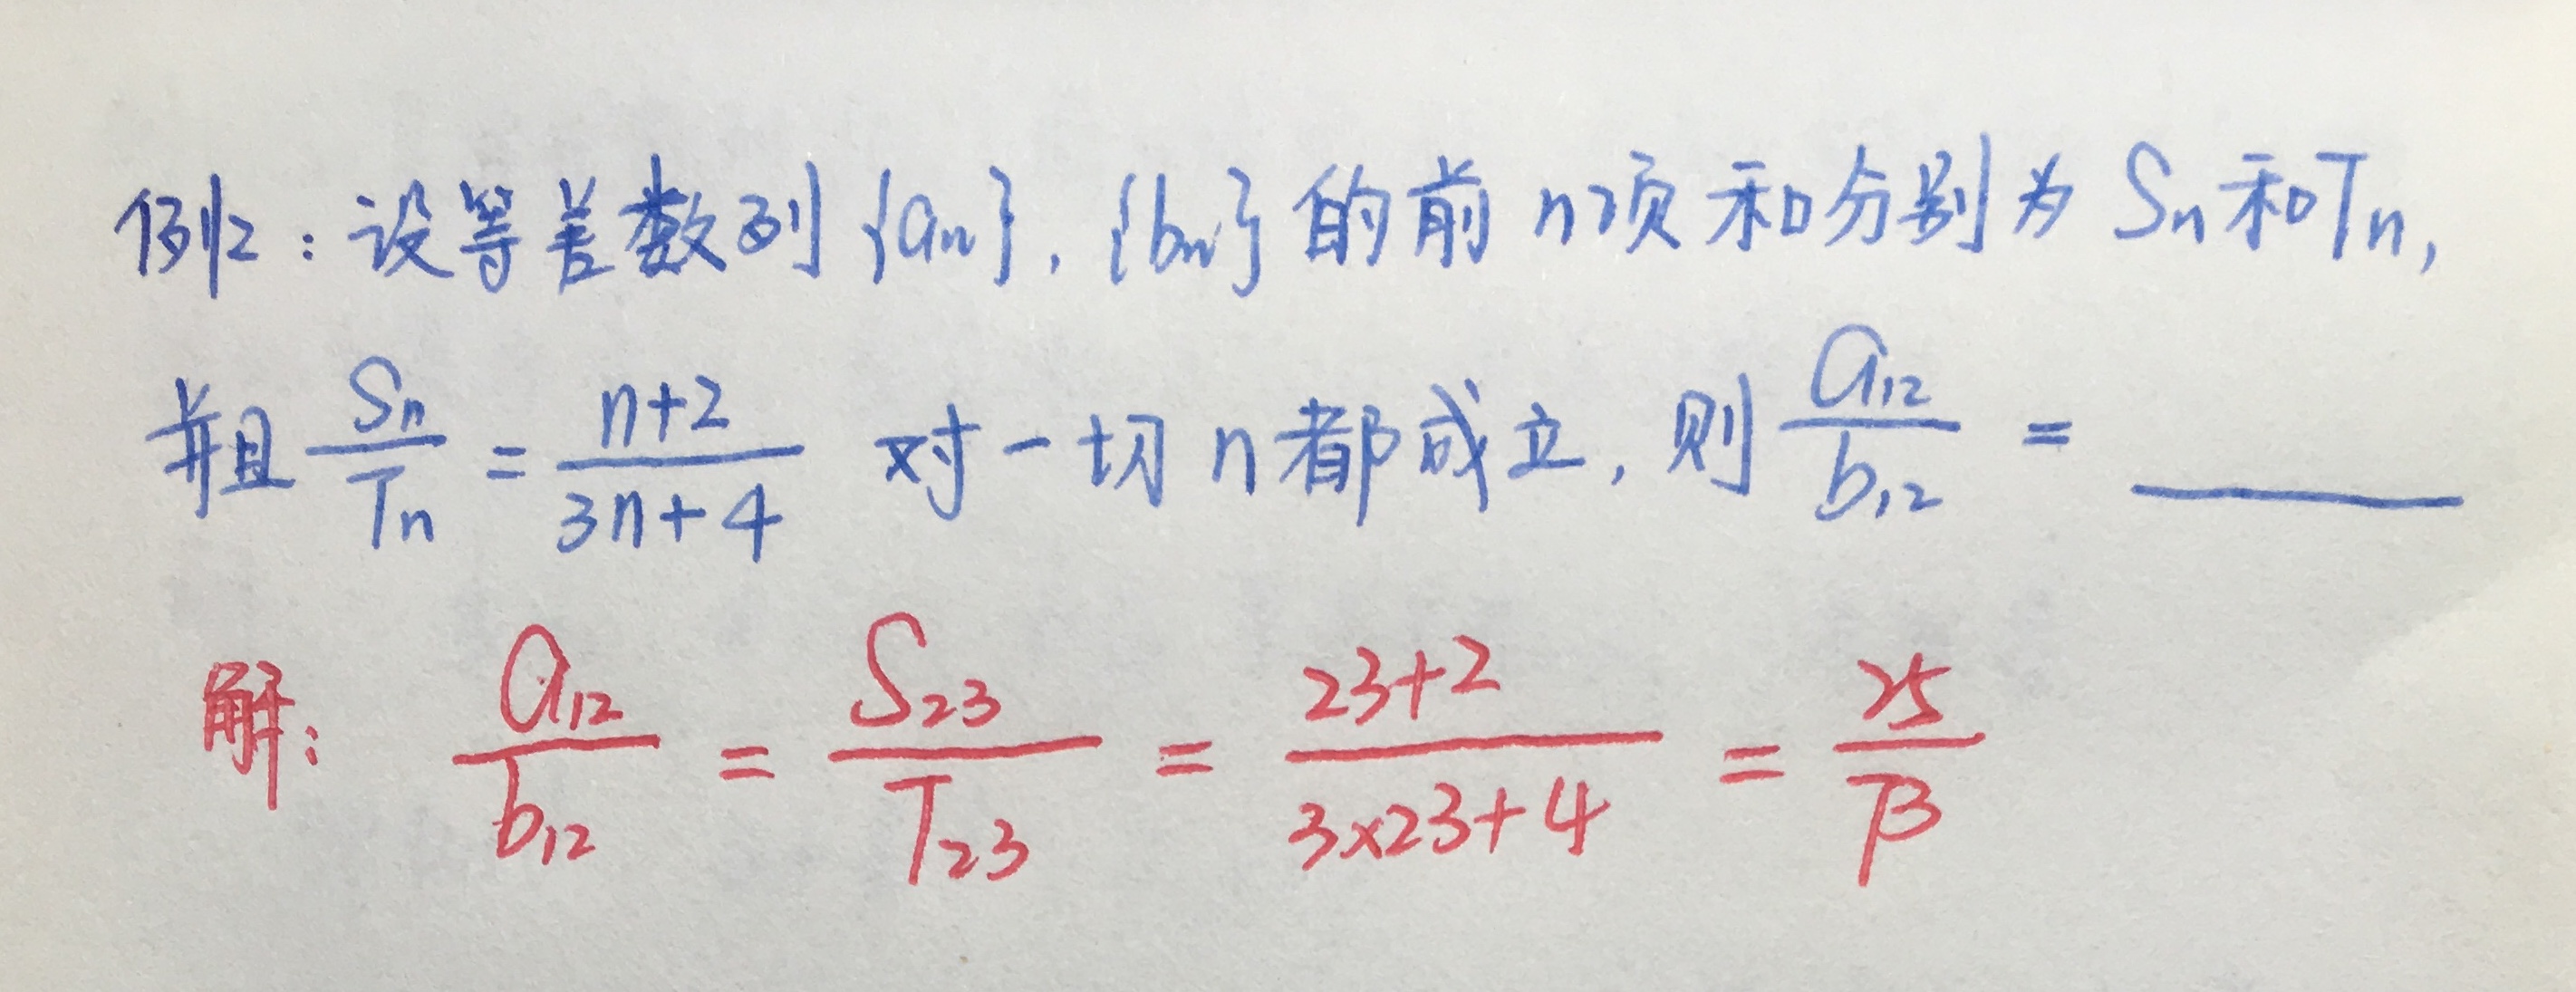 等差、等比数列求和公式，在小题中的巧妙用法